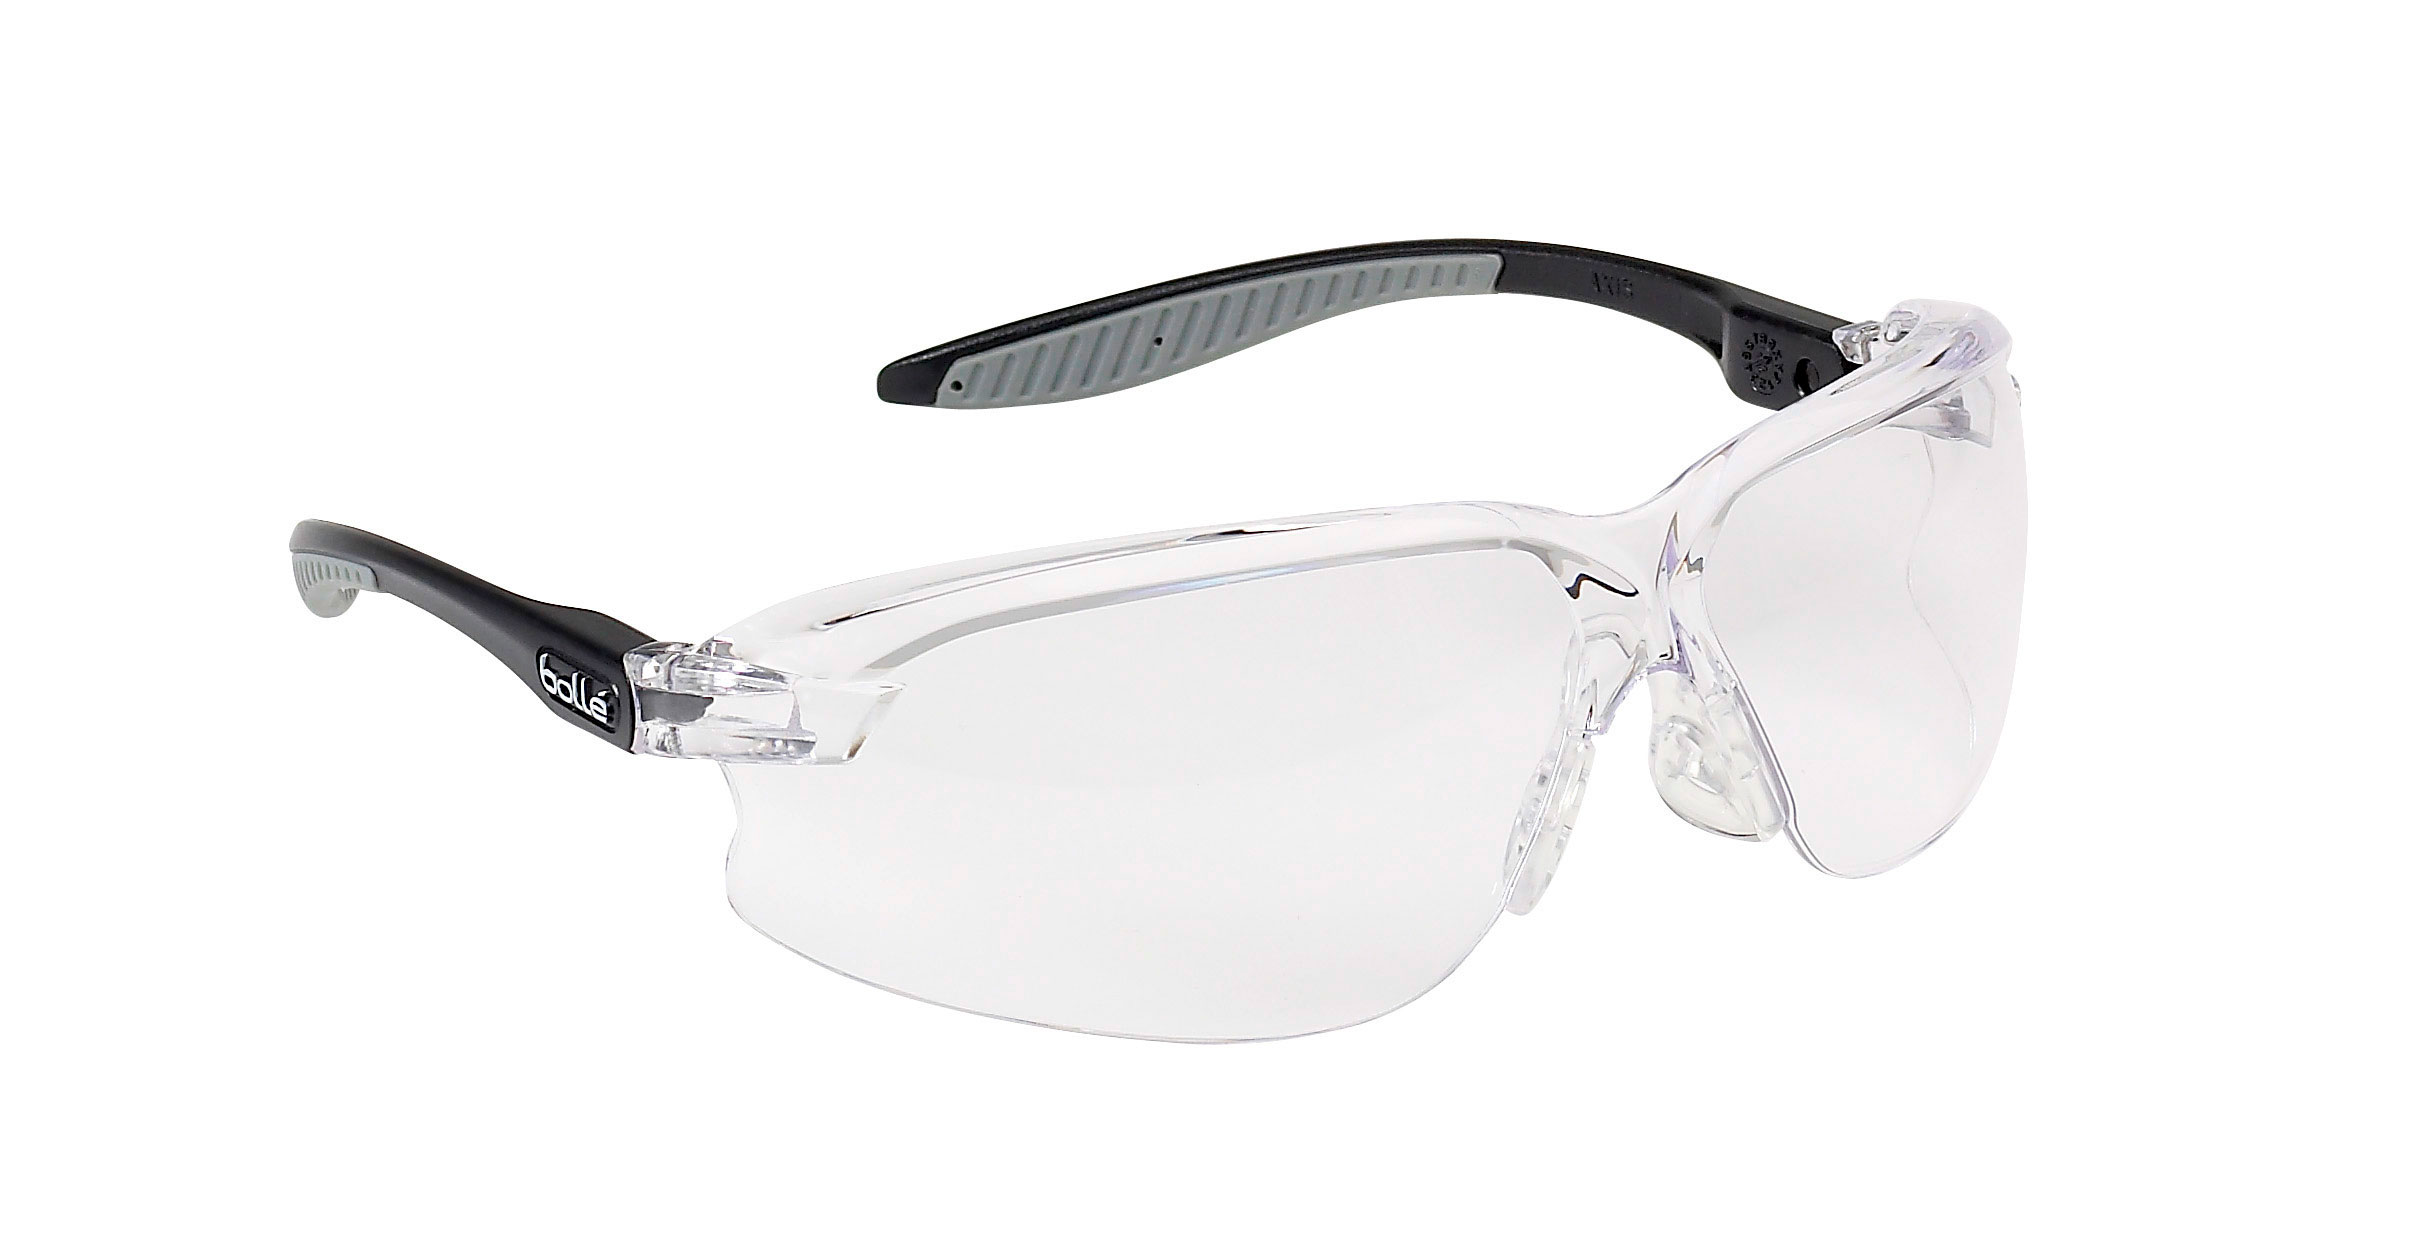 Gafas Gama Axis. BOLLÉ. Modelo: AXPSI. Características: Protección UV certificada y sport. Marcado oculares y patillas: 2-1.2¦1F, EN 166 F CE. Tratamientos: Antirayadura y antivaho